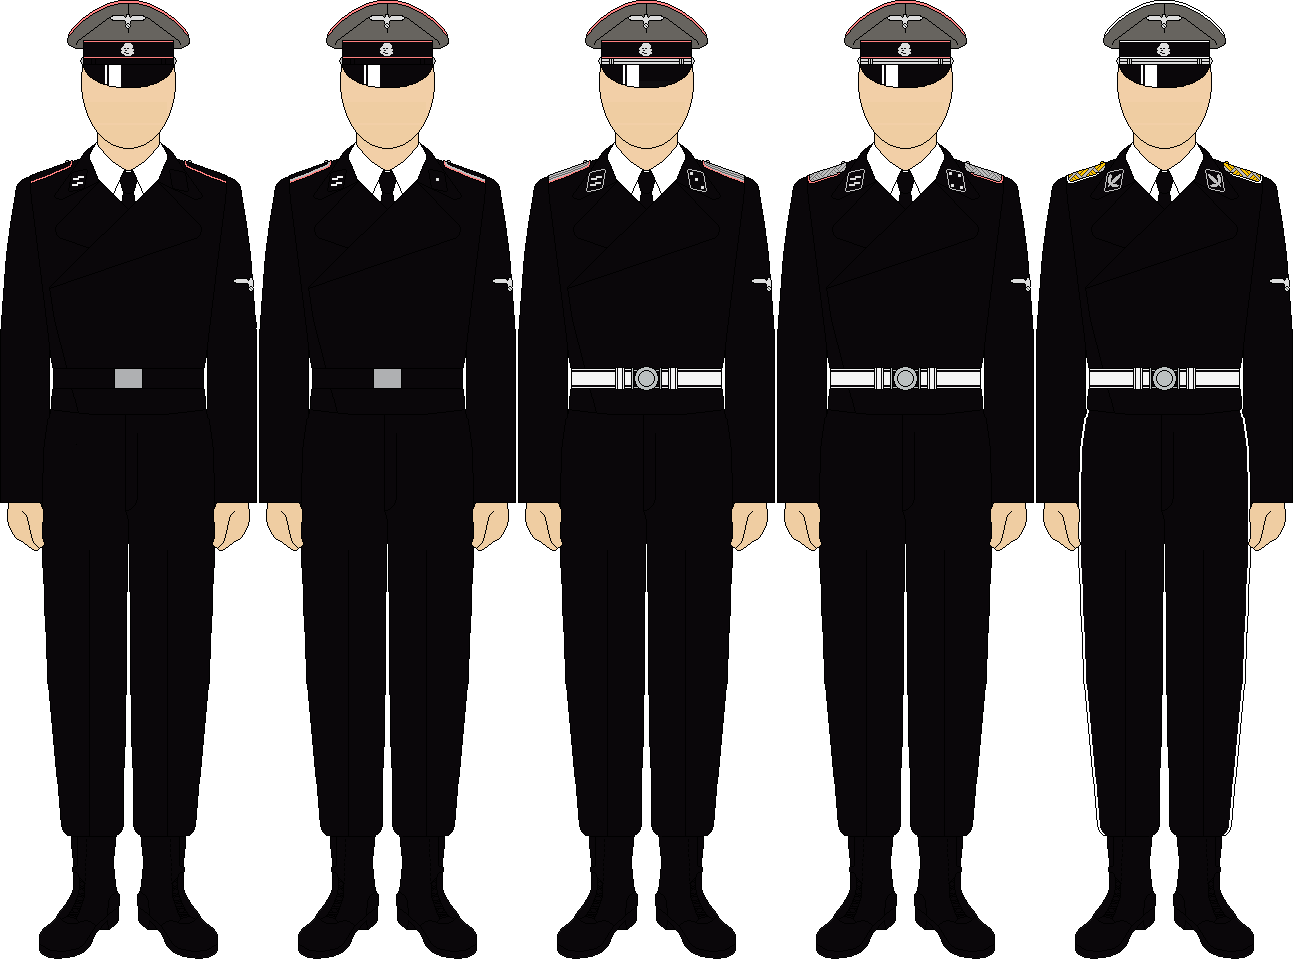 waffen ss officer uniform